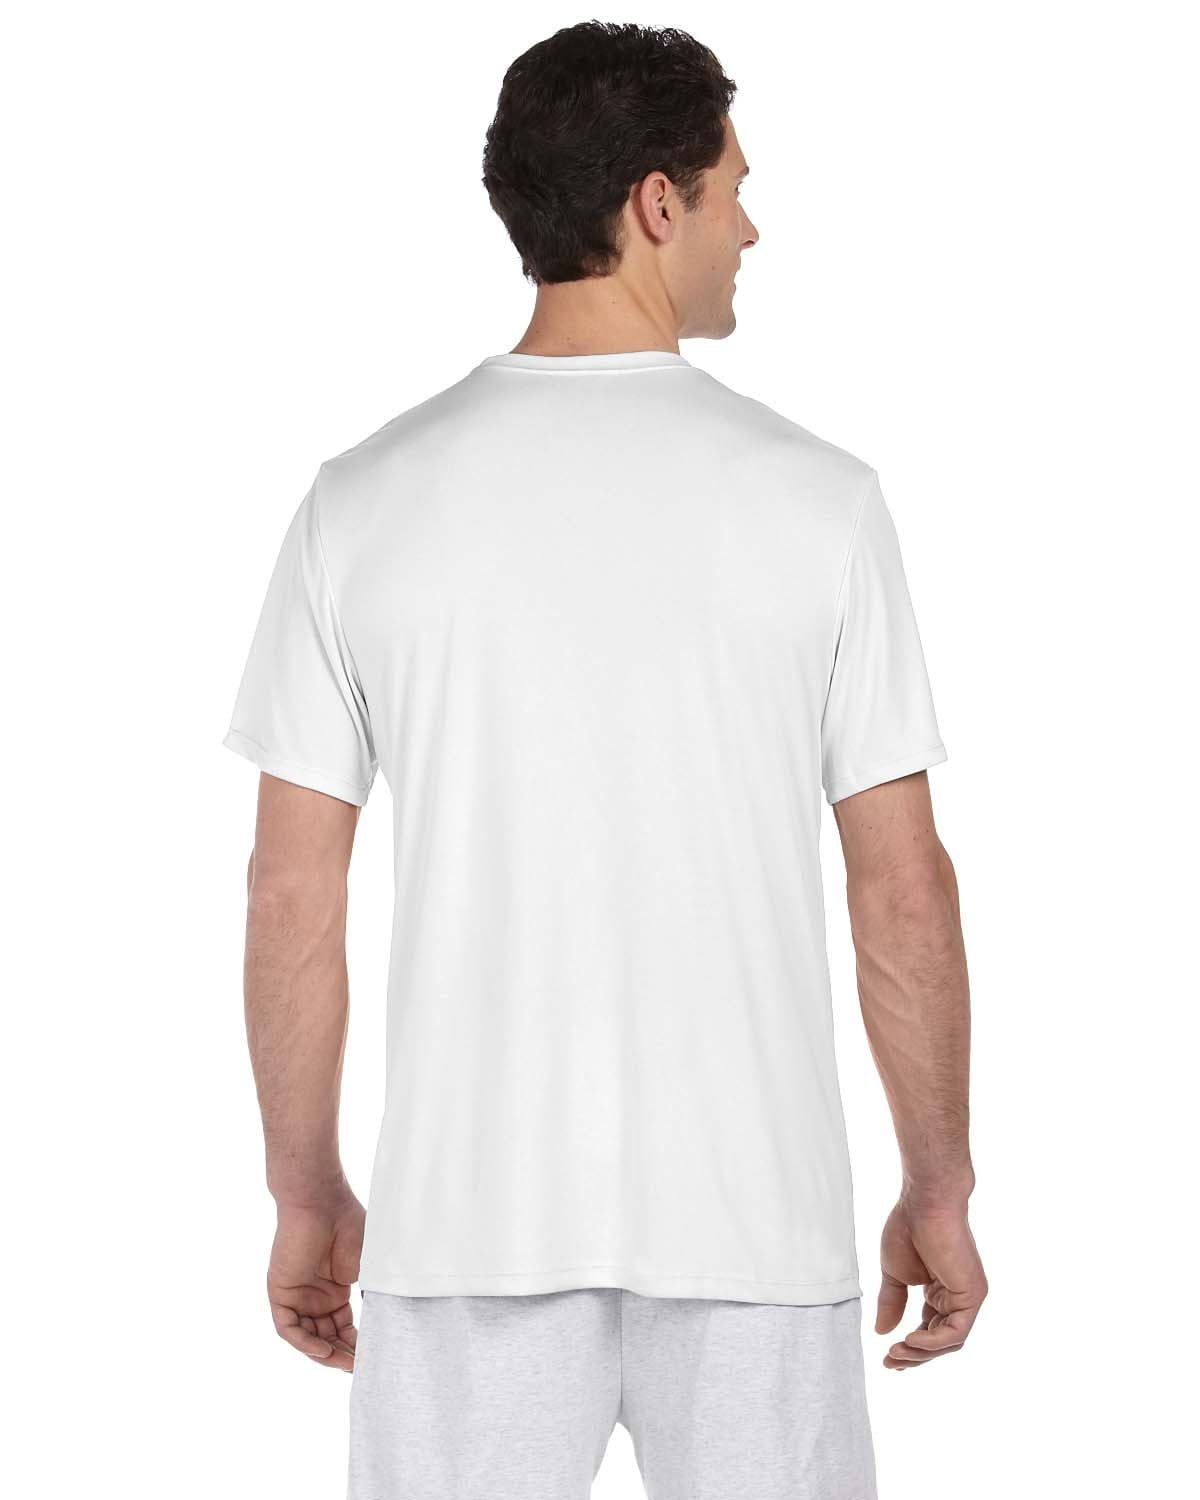 Hanes 4 oz NANO-T Cool Dri T-Shirt (Pack of 2) (1 White / 1 Light Blue ...